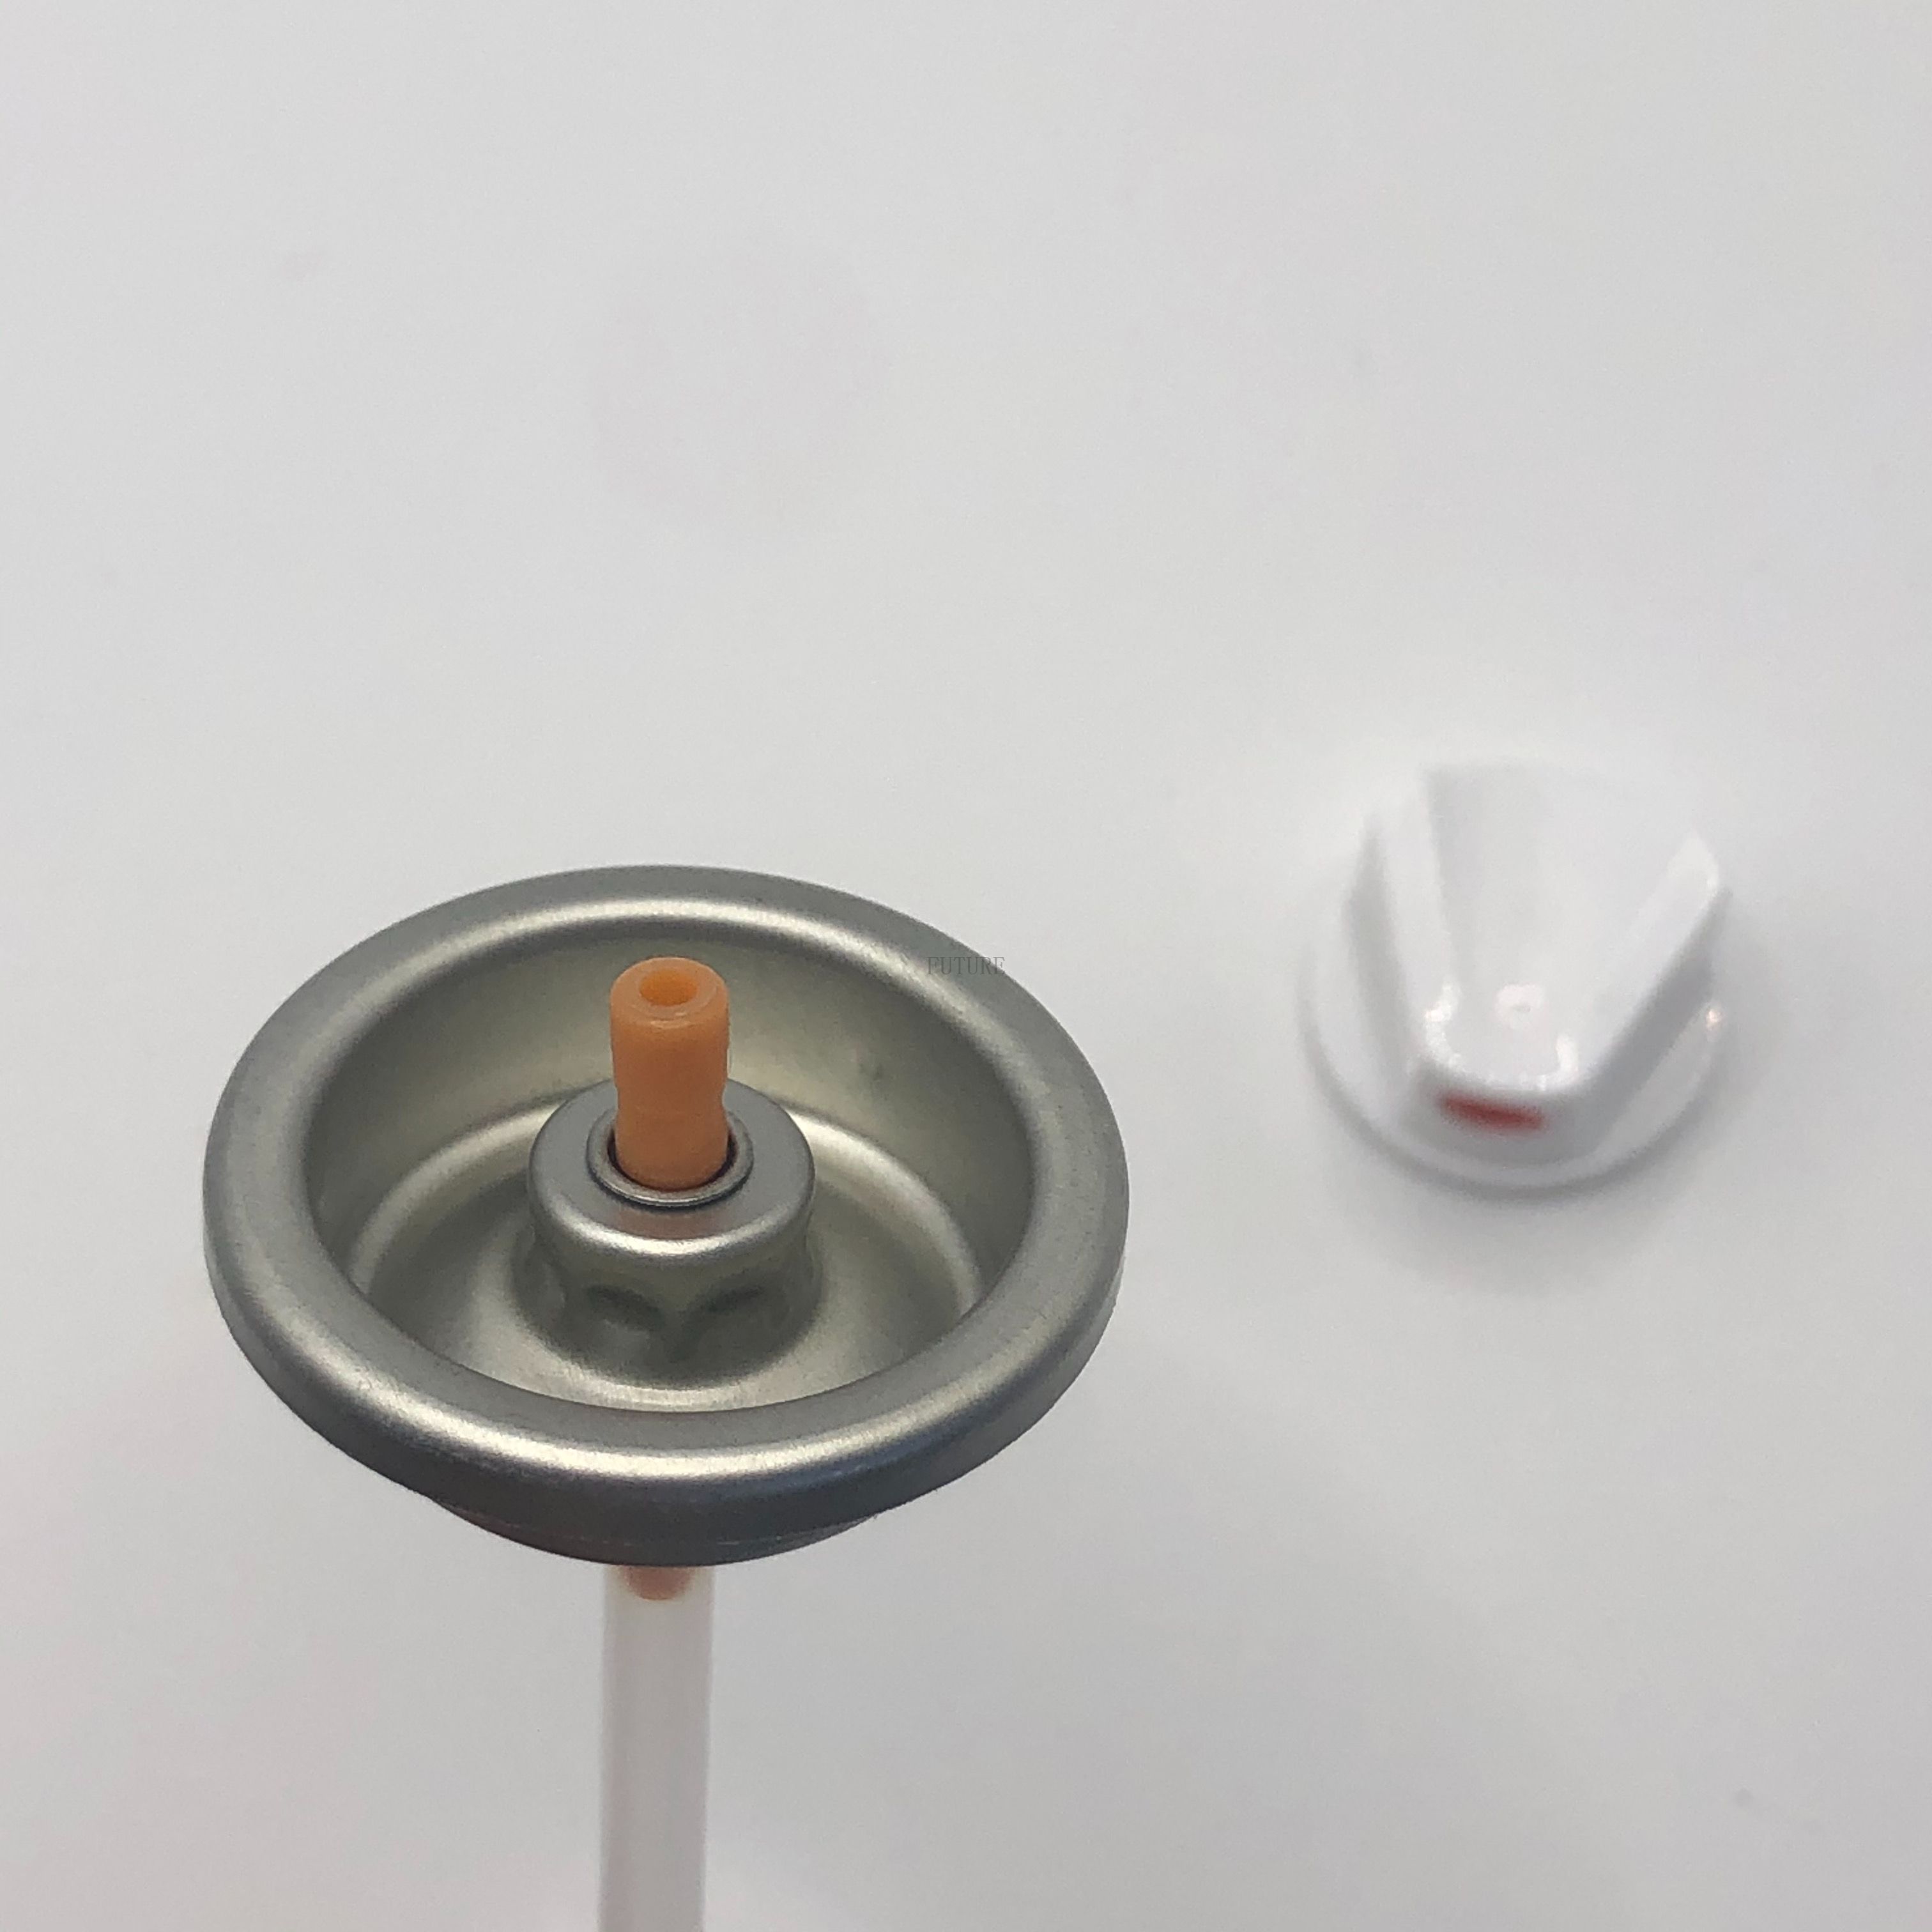 Профессиональный спрей -клапан краски для точного покрытия - регулируемое давление и управление атомизацией